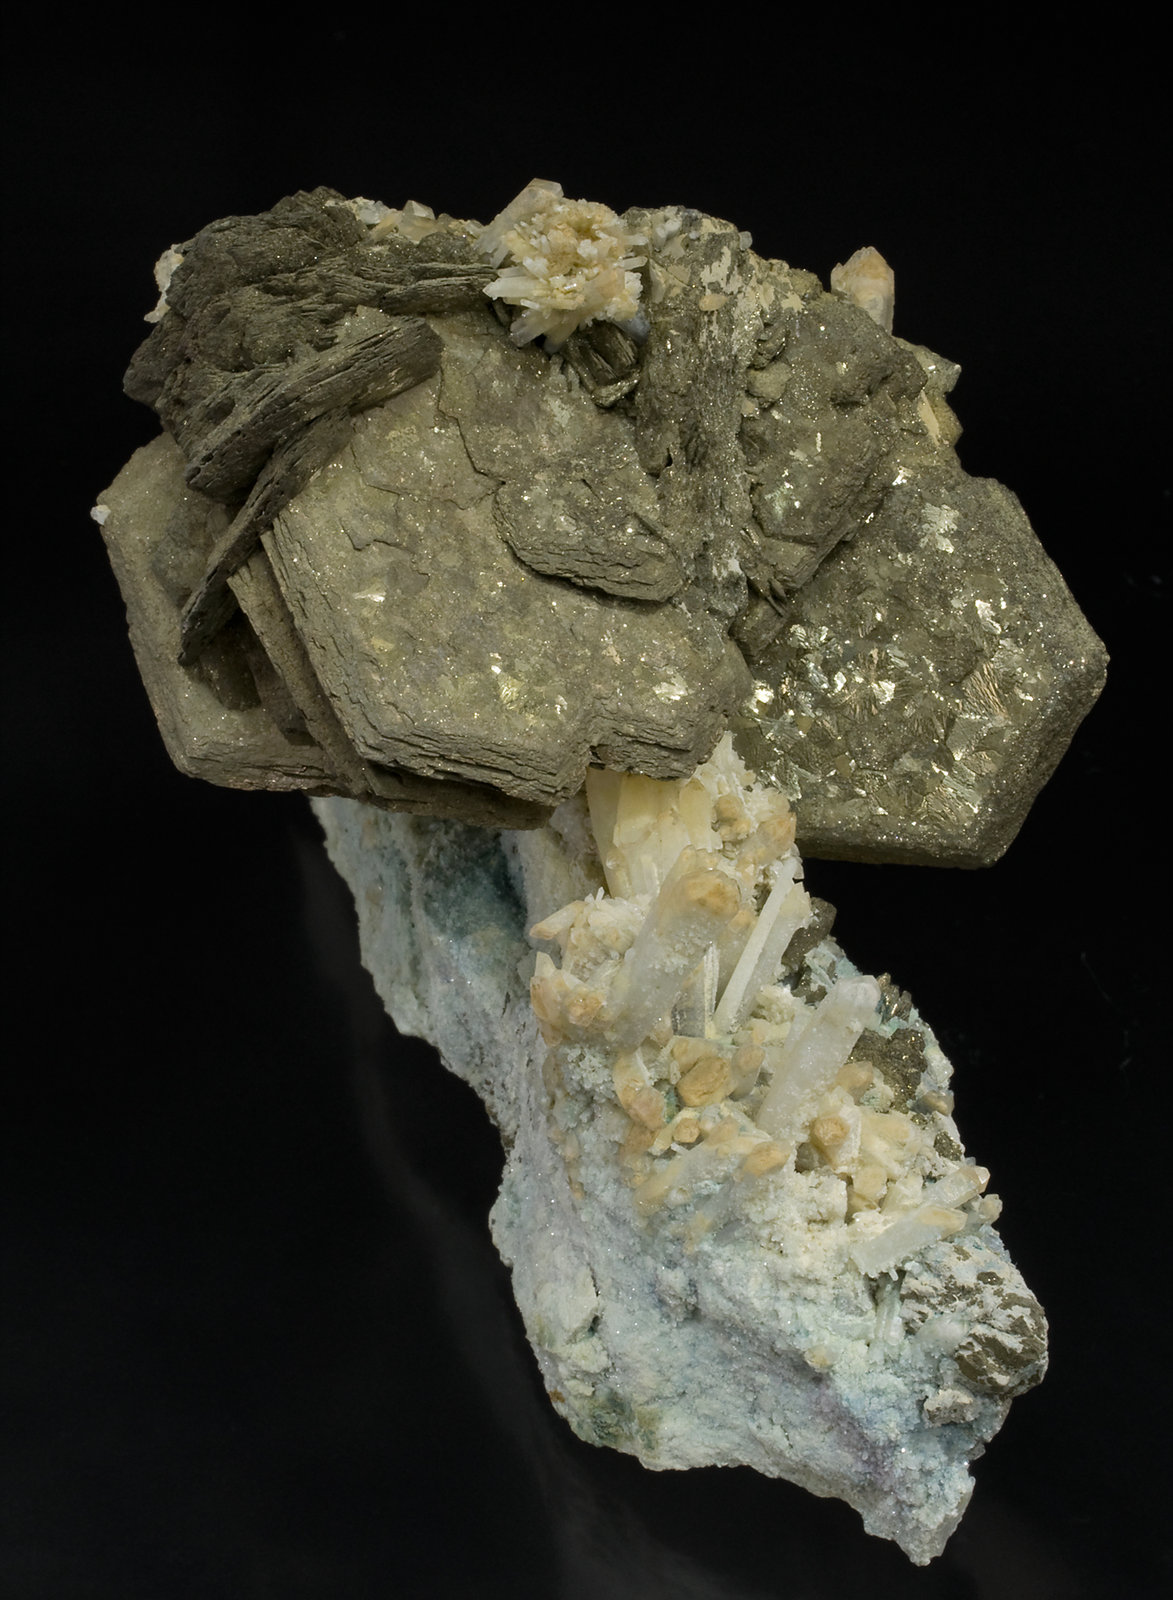 specimens/s_imagesW6/Pyrrhotite-JZ50W6s.jpg